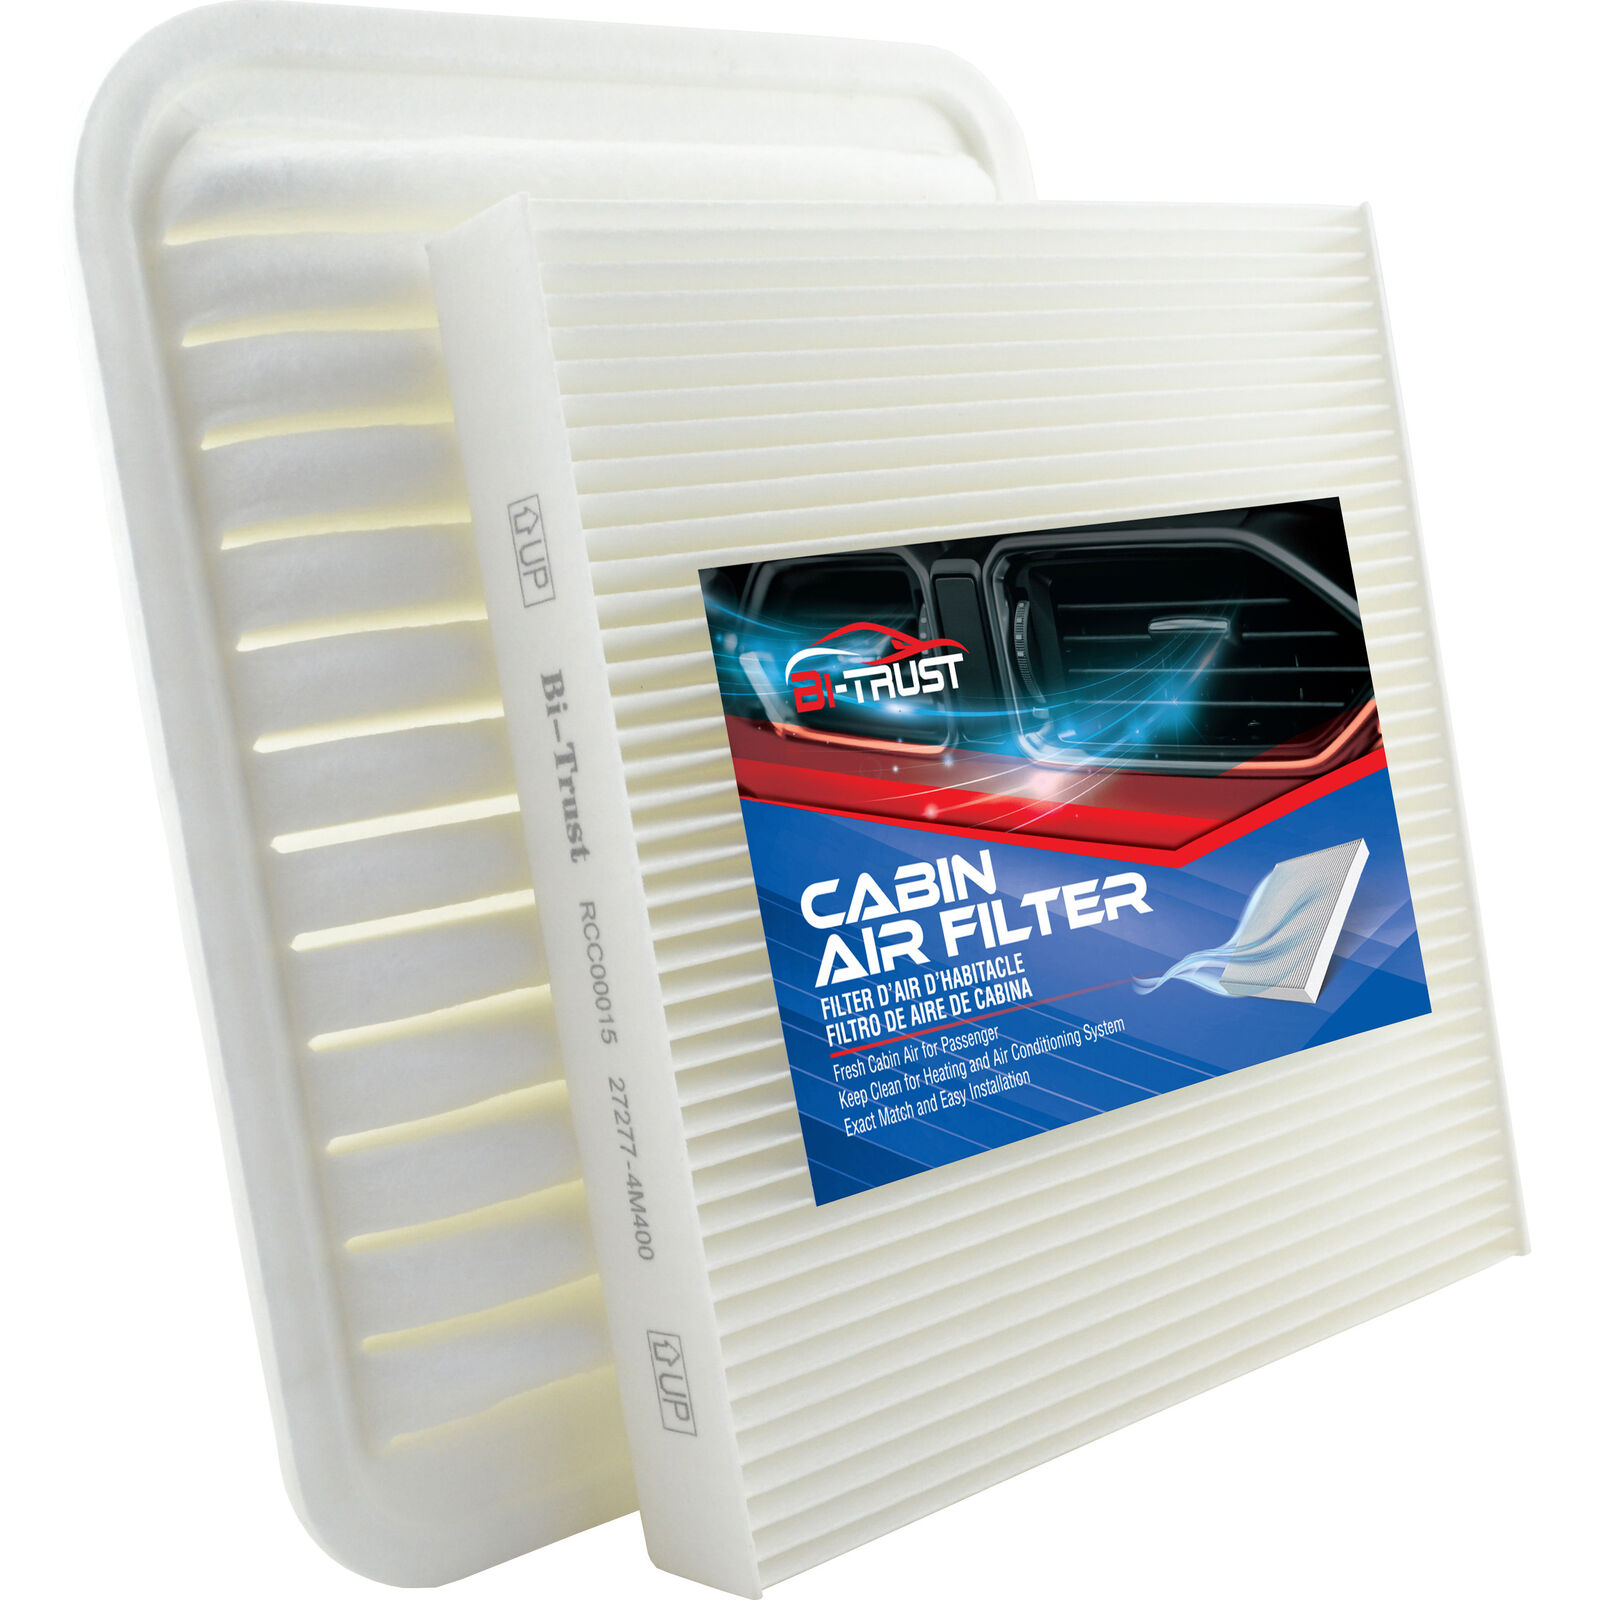 Engine Cabin Air Filter Kit for Mitsubishi Outlander Sport 13-22 2.0L 15-22 2.4L